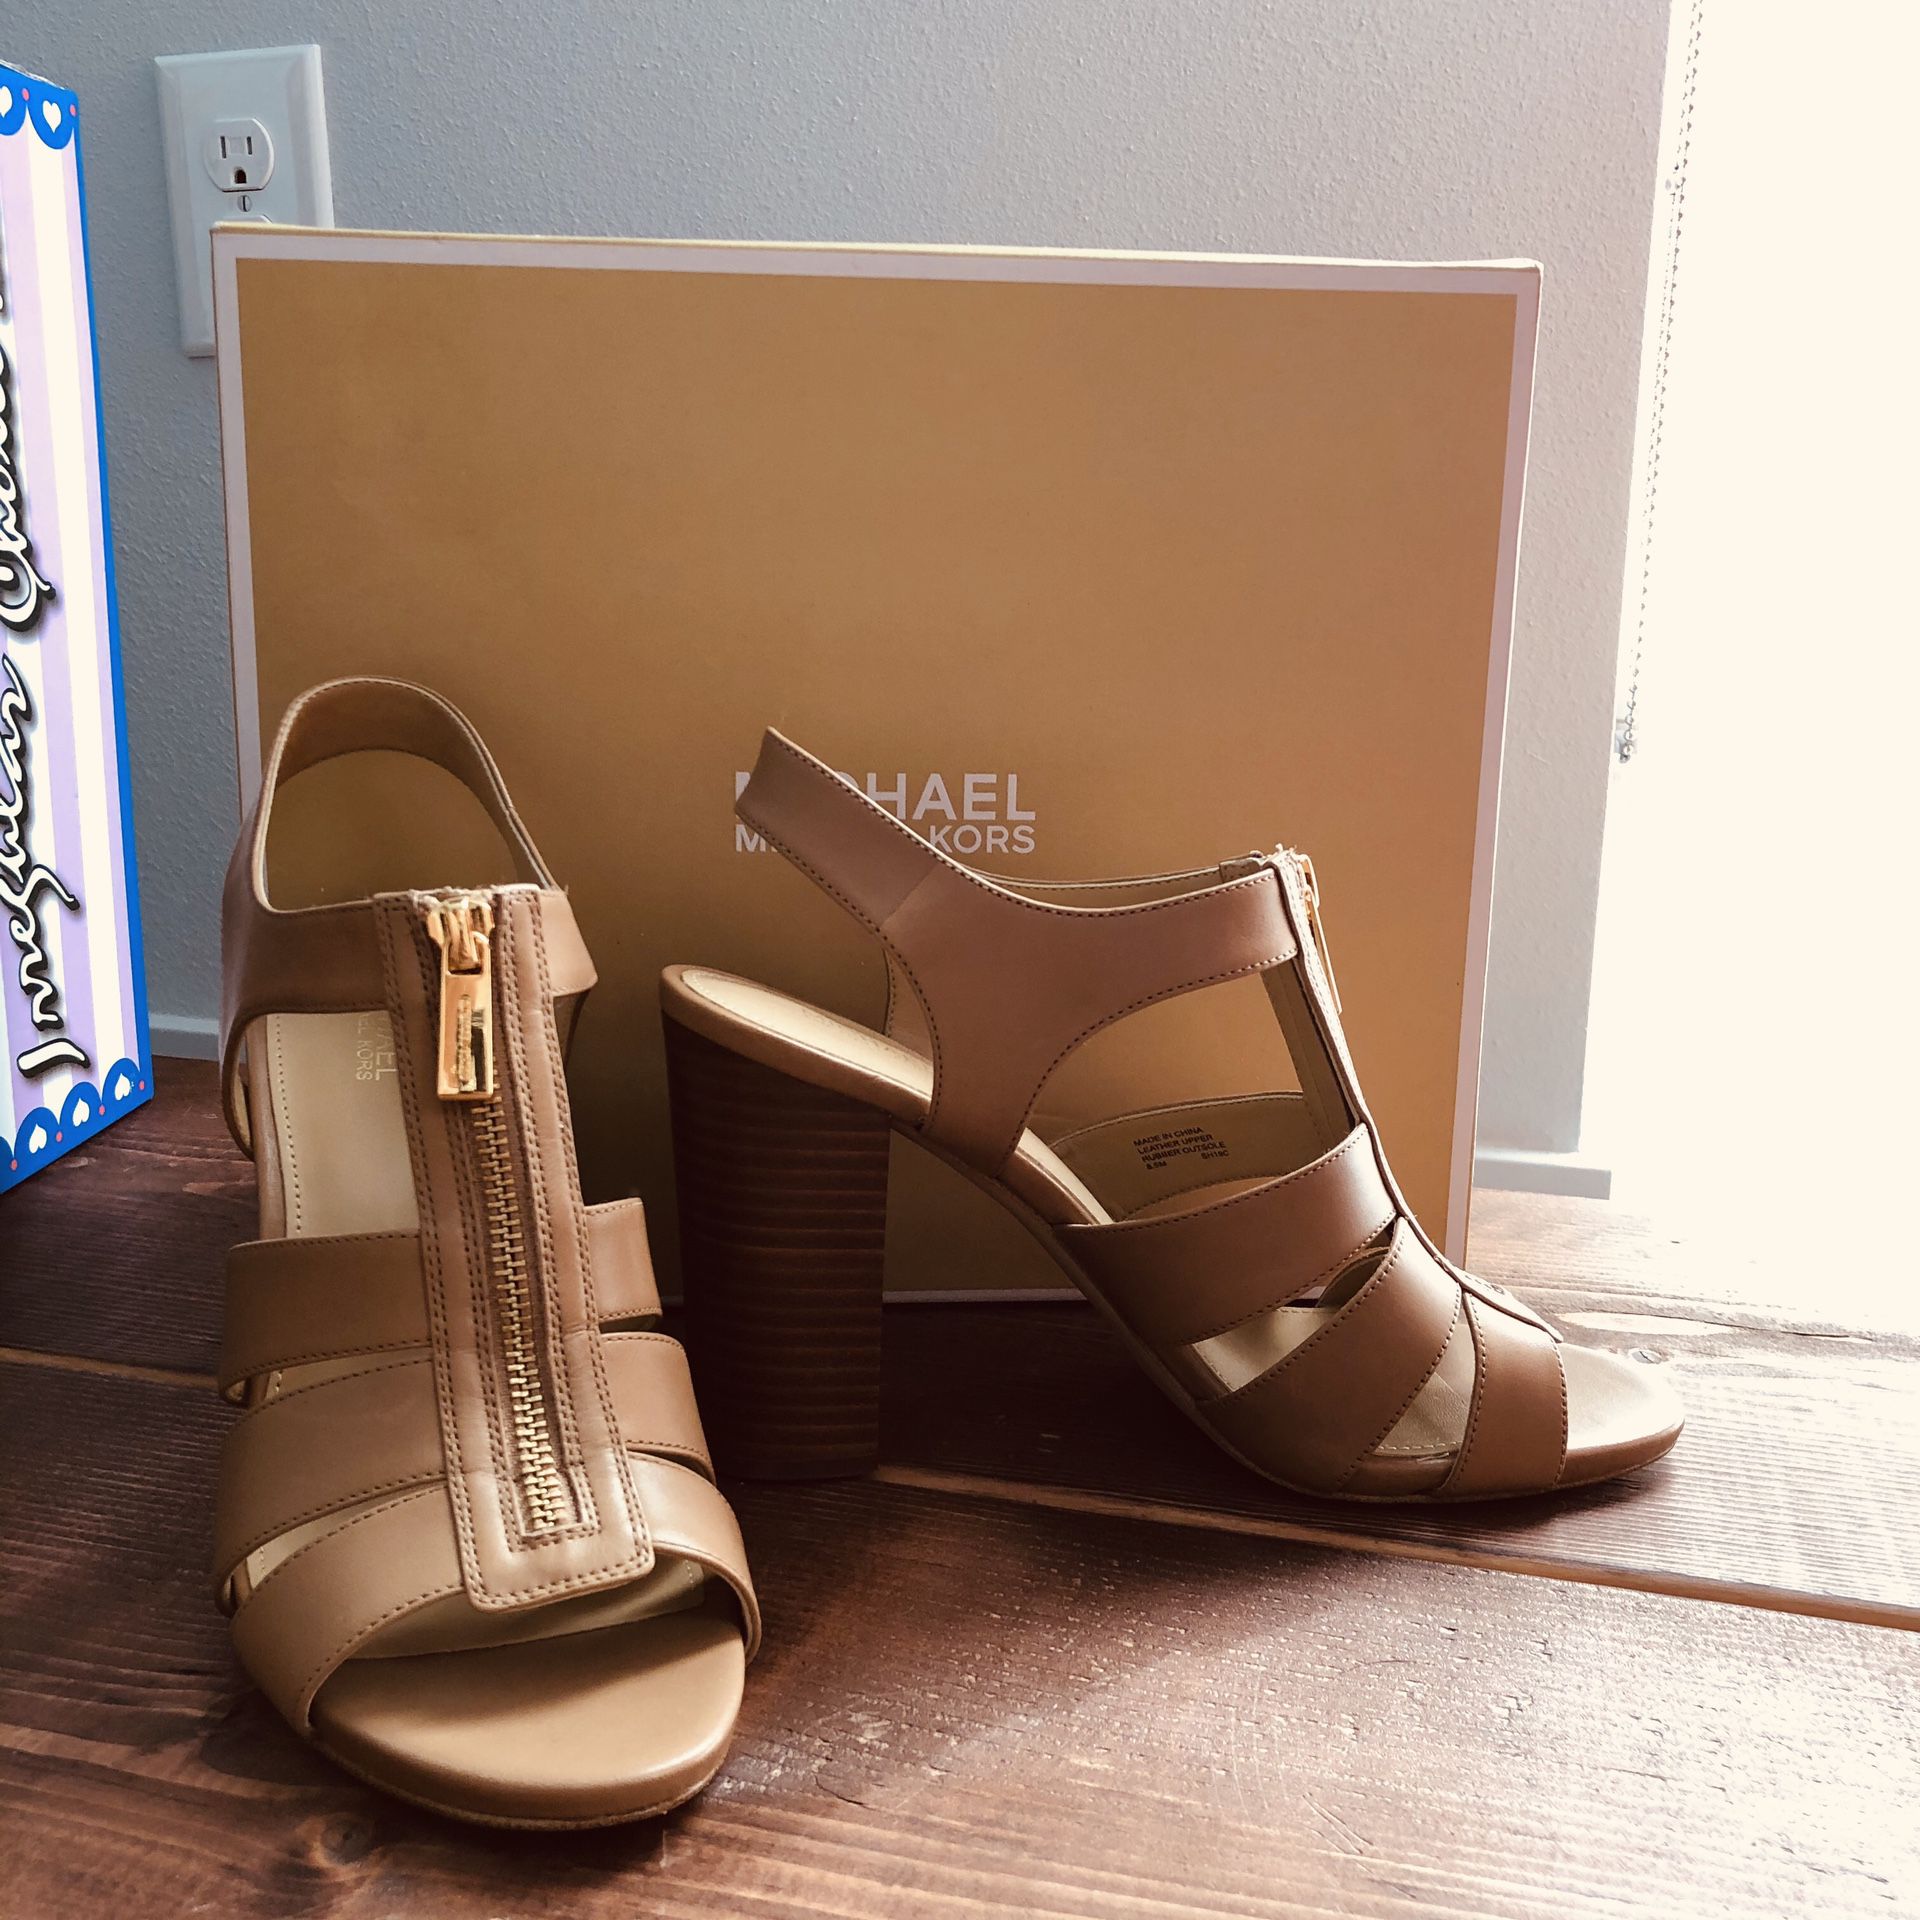 Michael Kors tan beige high heel heeled sandals (originally $119.95)